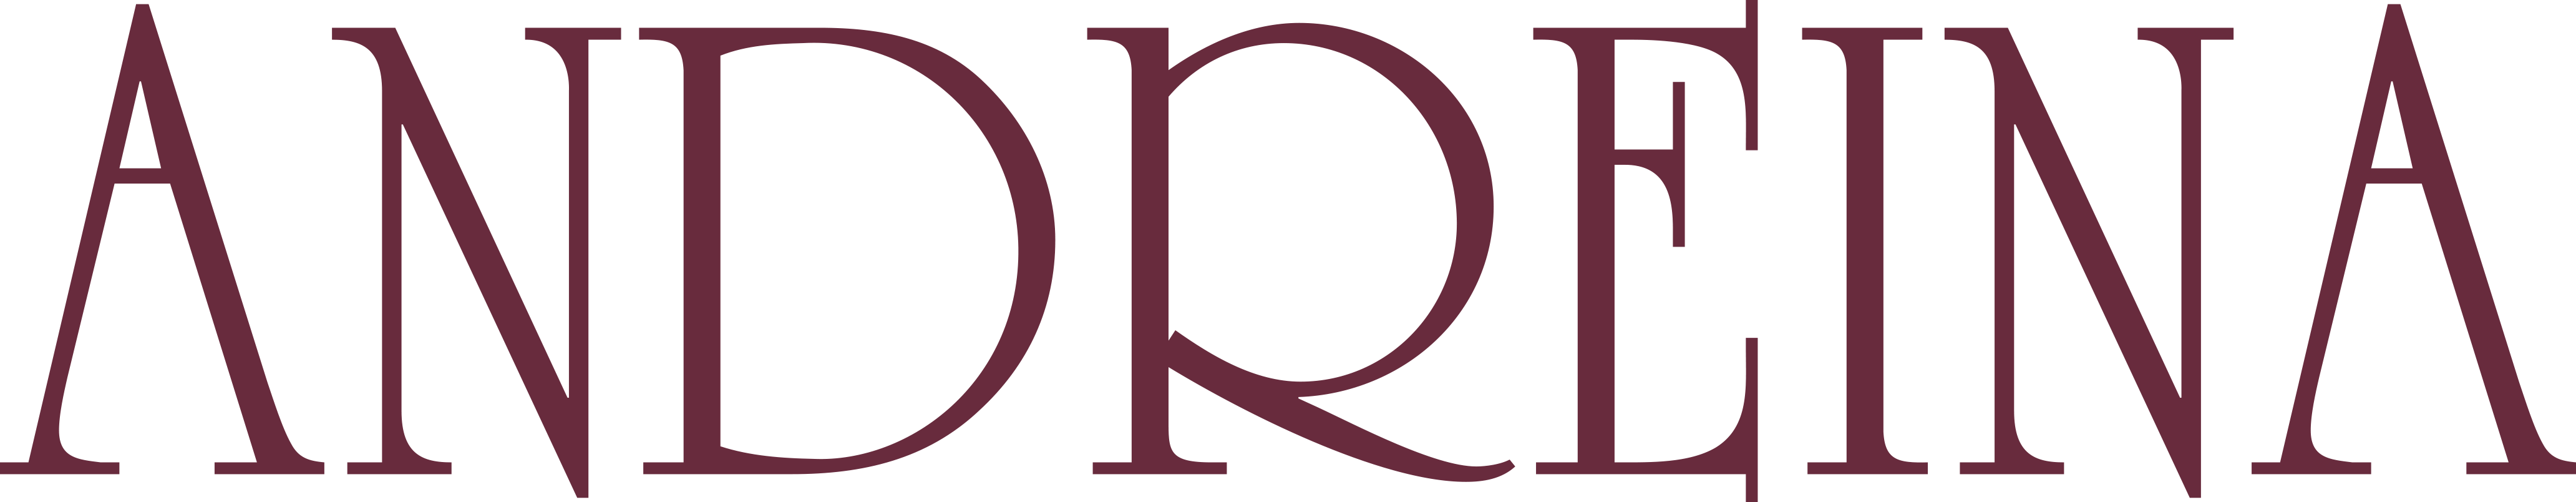 Ristorante Andreina Logo